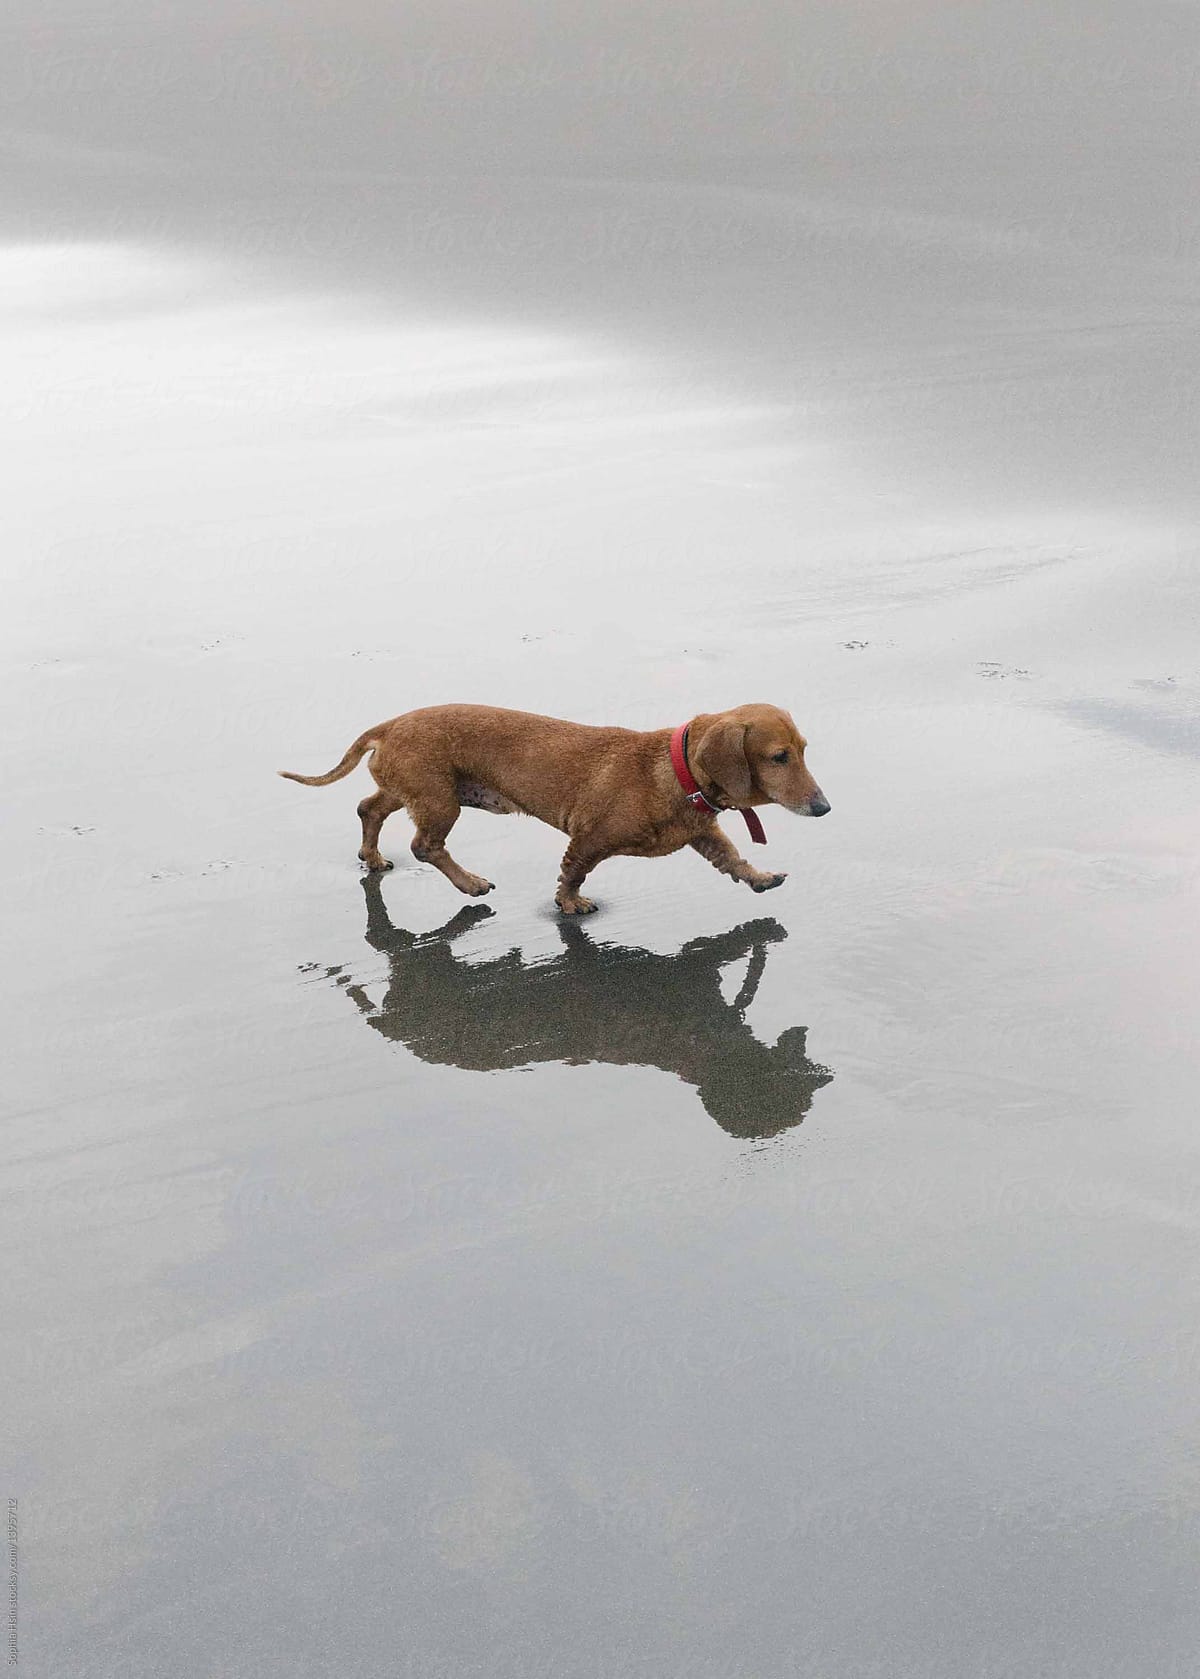 Happy wiener dog walking on the beach